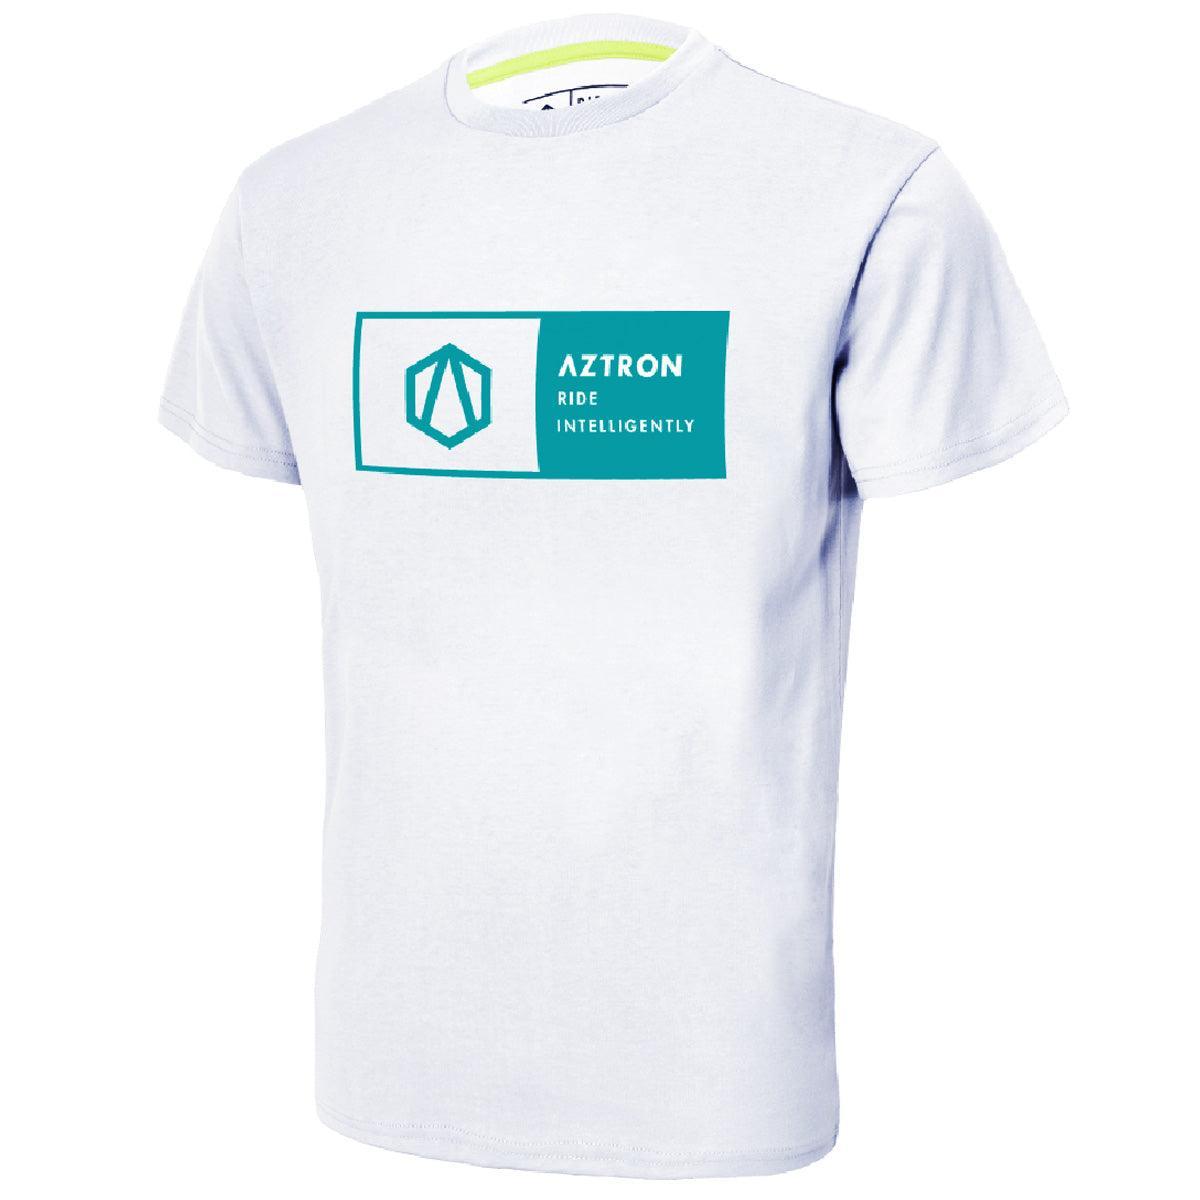 Aztron Logo T-Shirt - Kitesurf